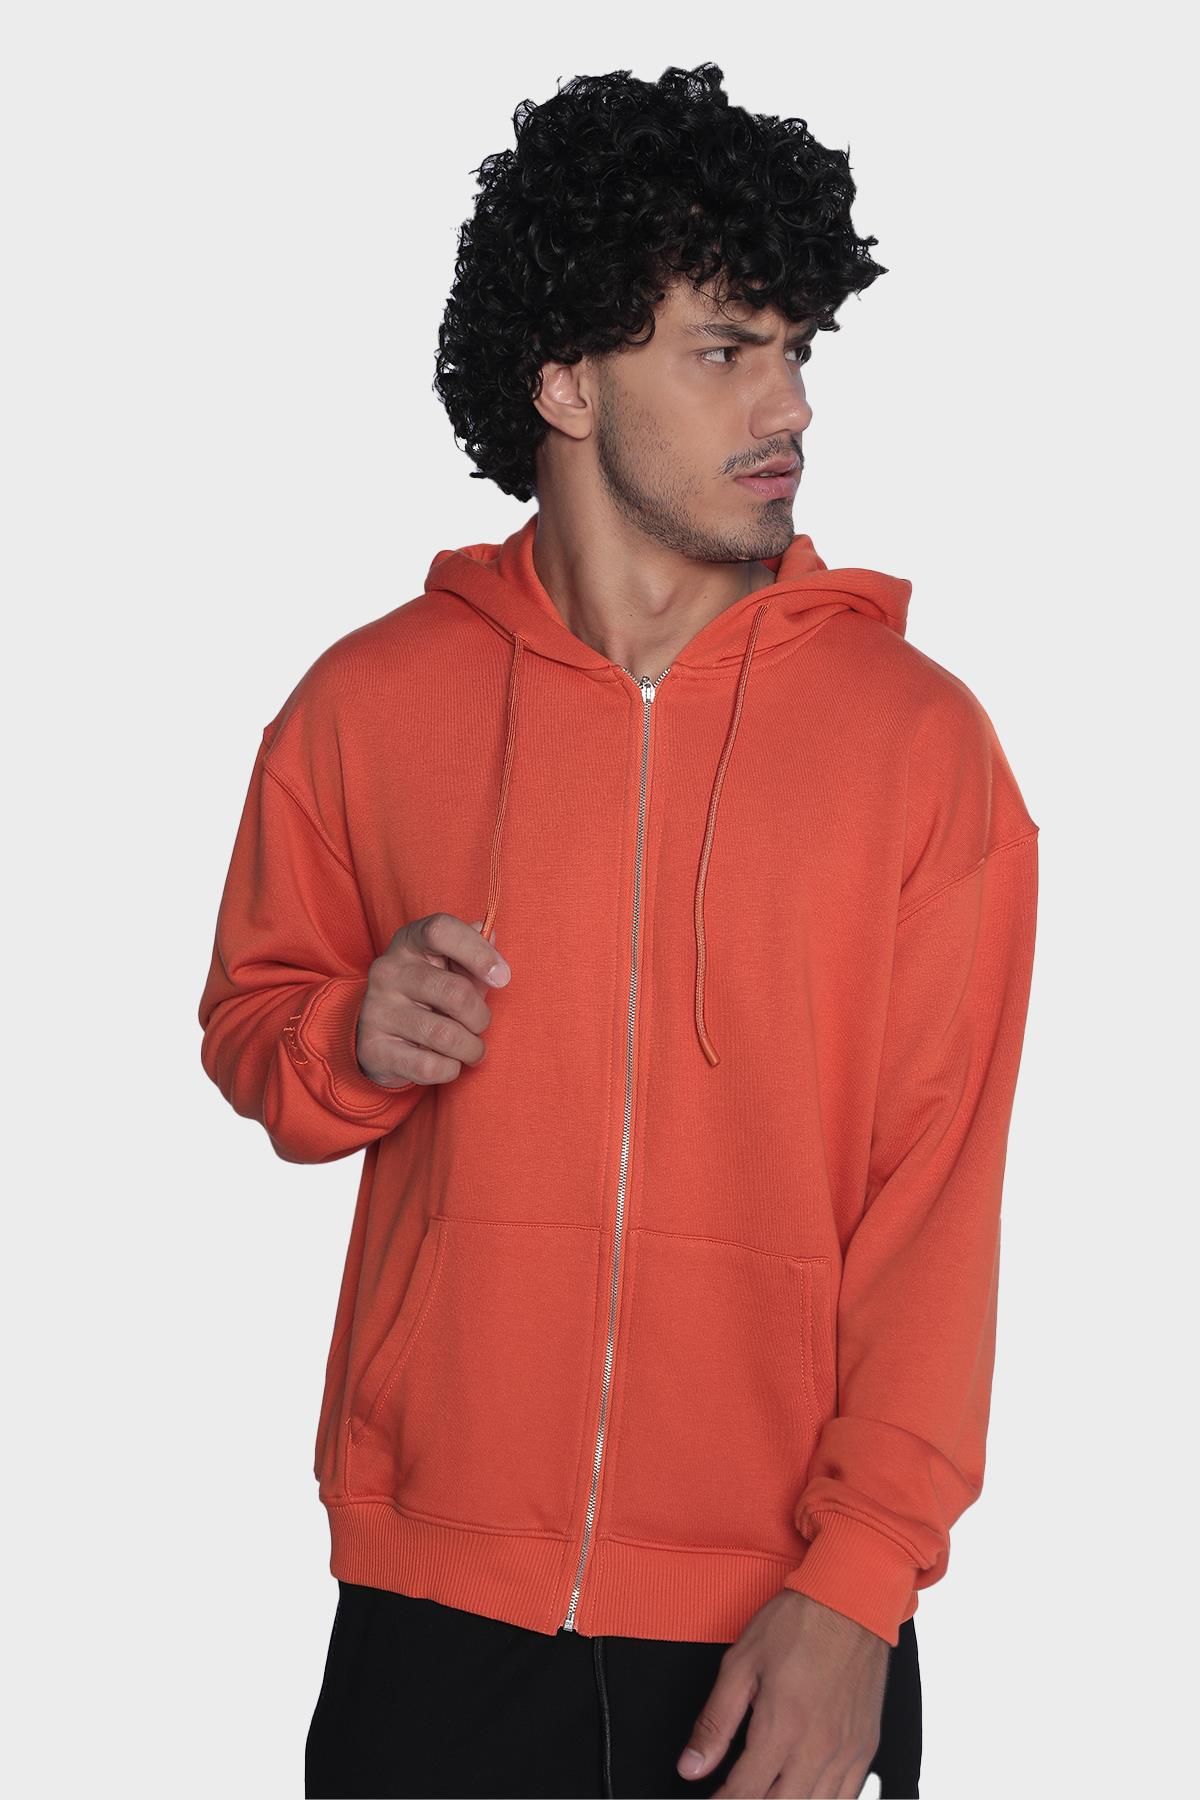 Мужская толстовка с капюшоном, длинным рукавом и молнией - Оранжевый